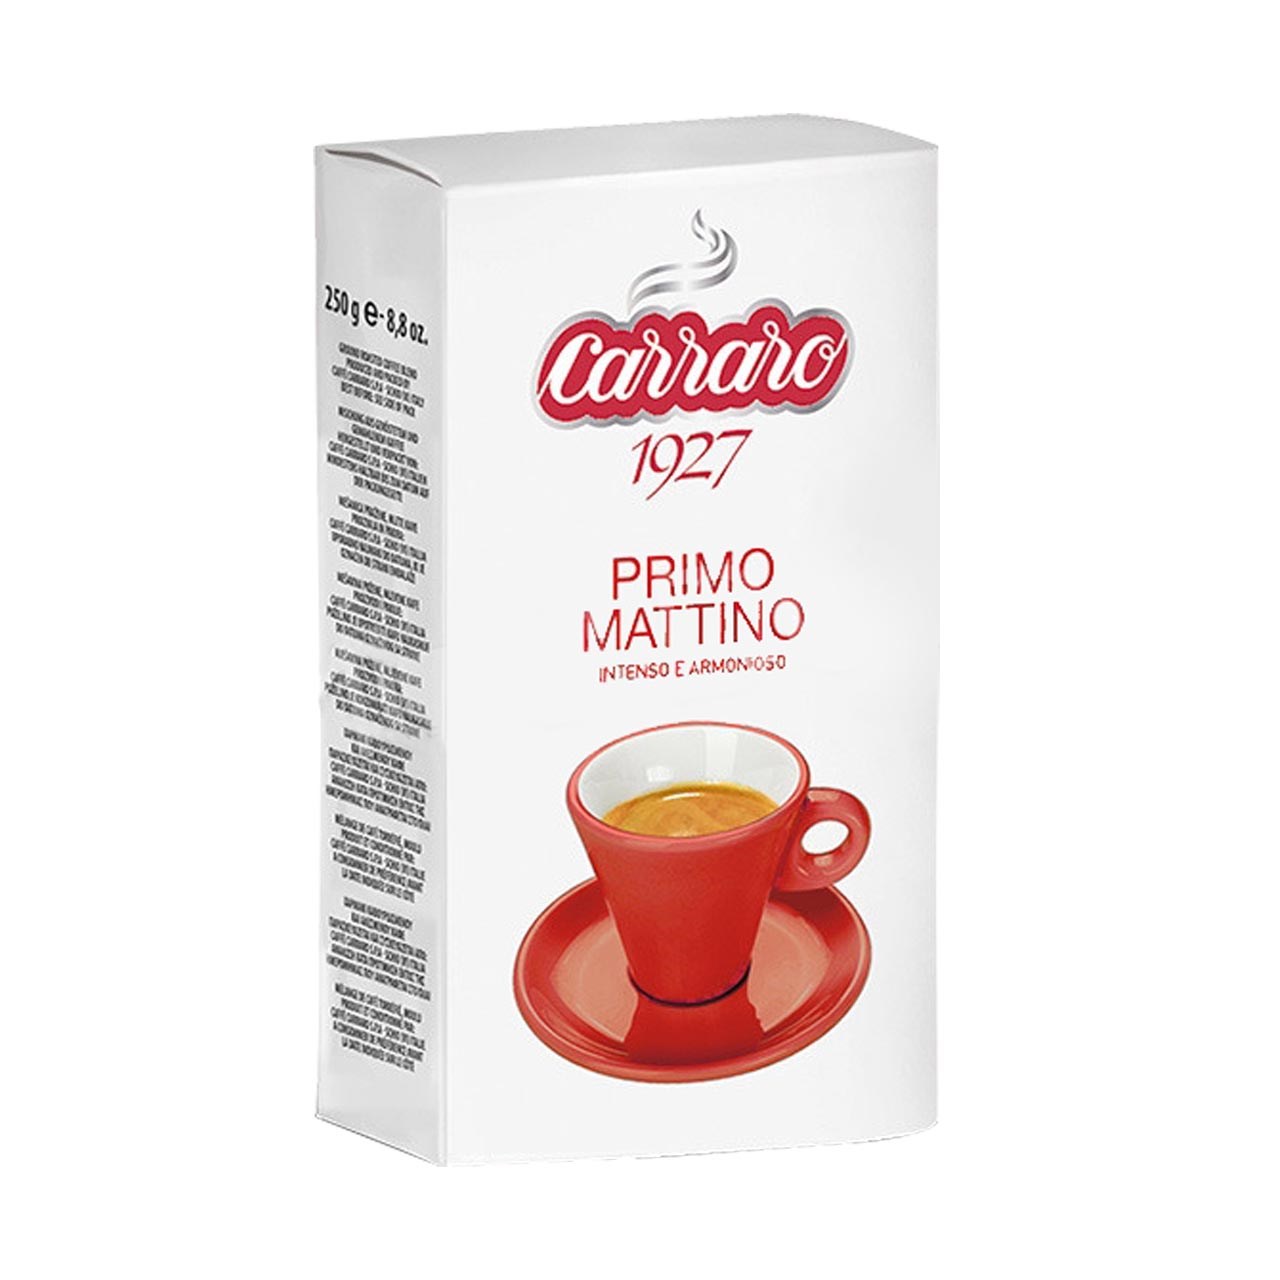 بسته پودر قهوه کارارو مدل PRIMO MATTINO  مقدار  250 گرم